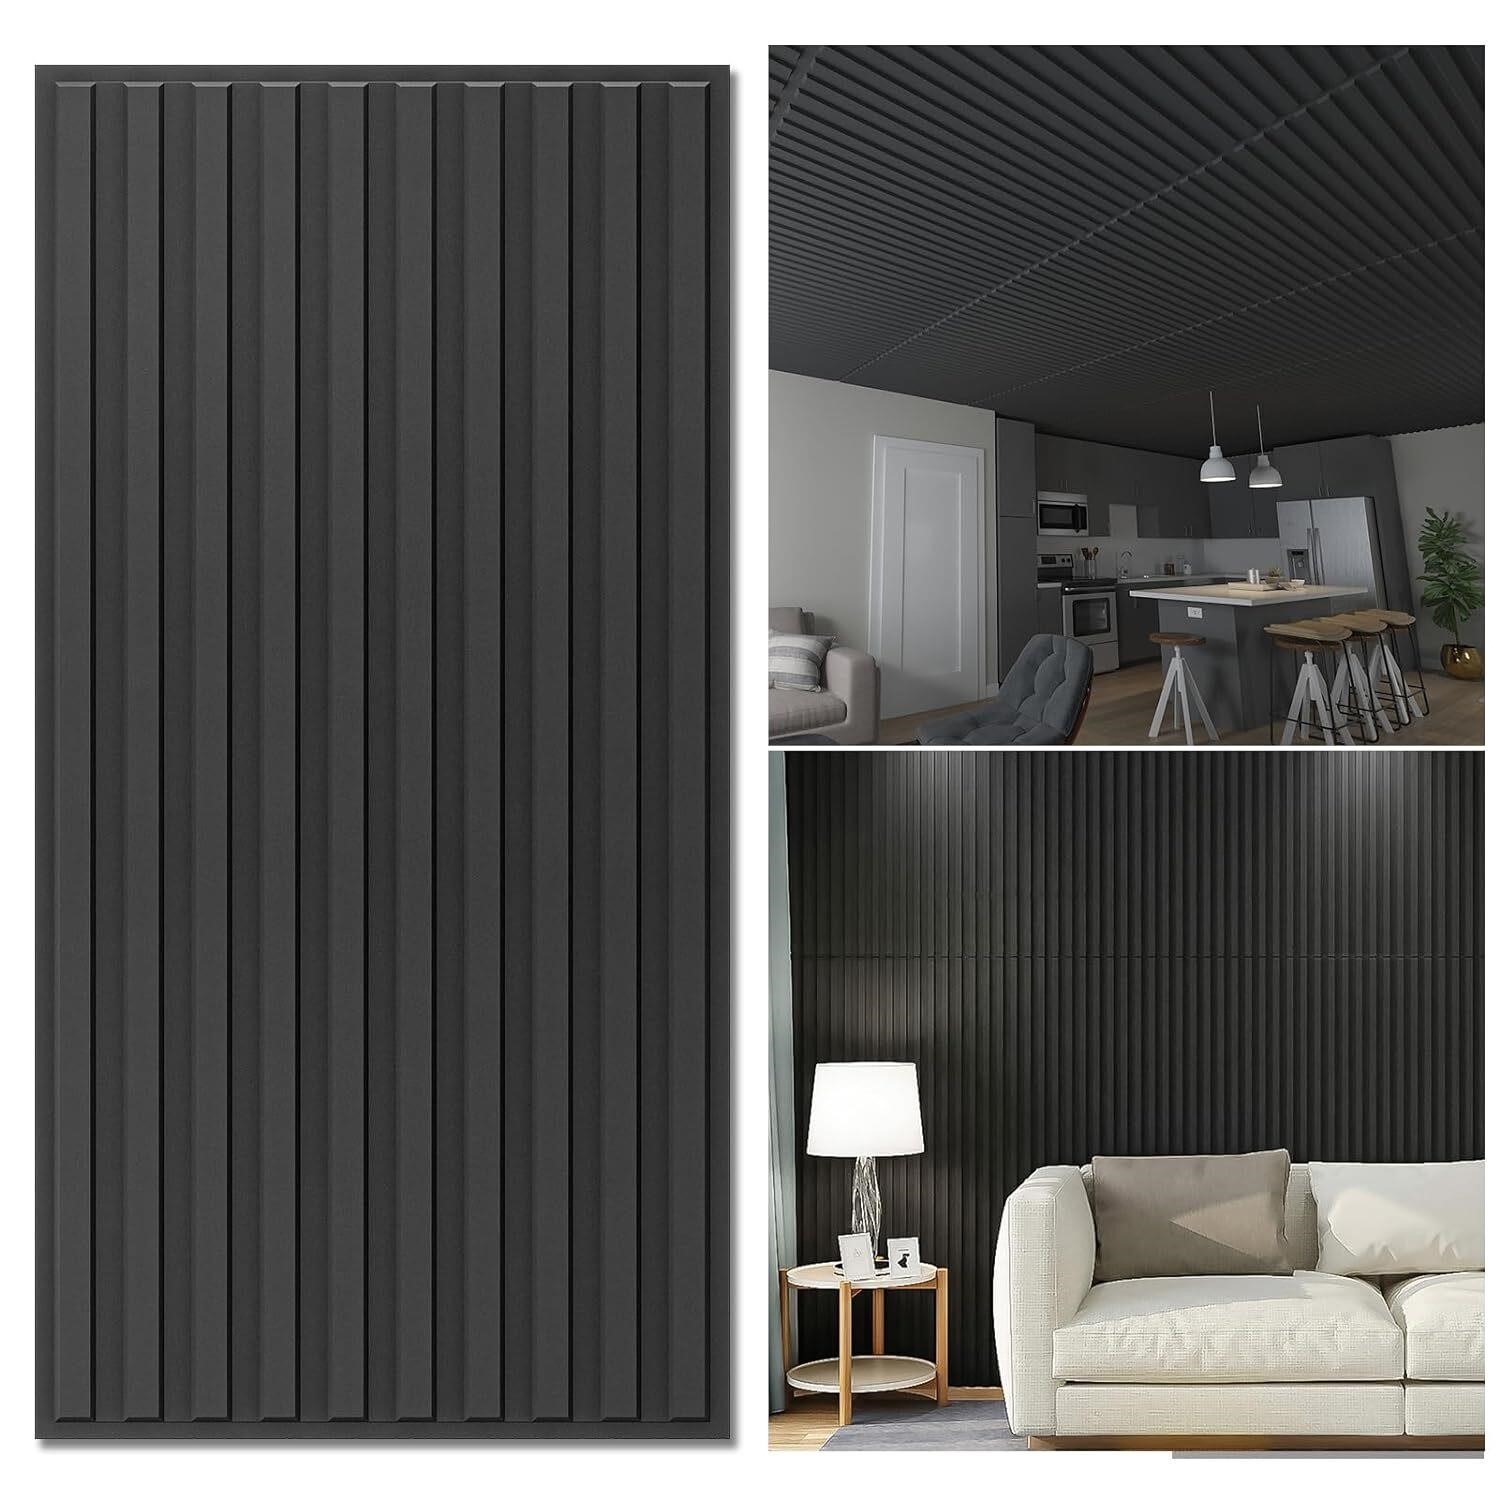 Art3d 12pk 2ftx4ft Black Ceiling Tiles  24x48in